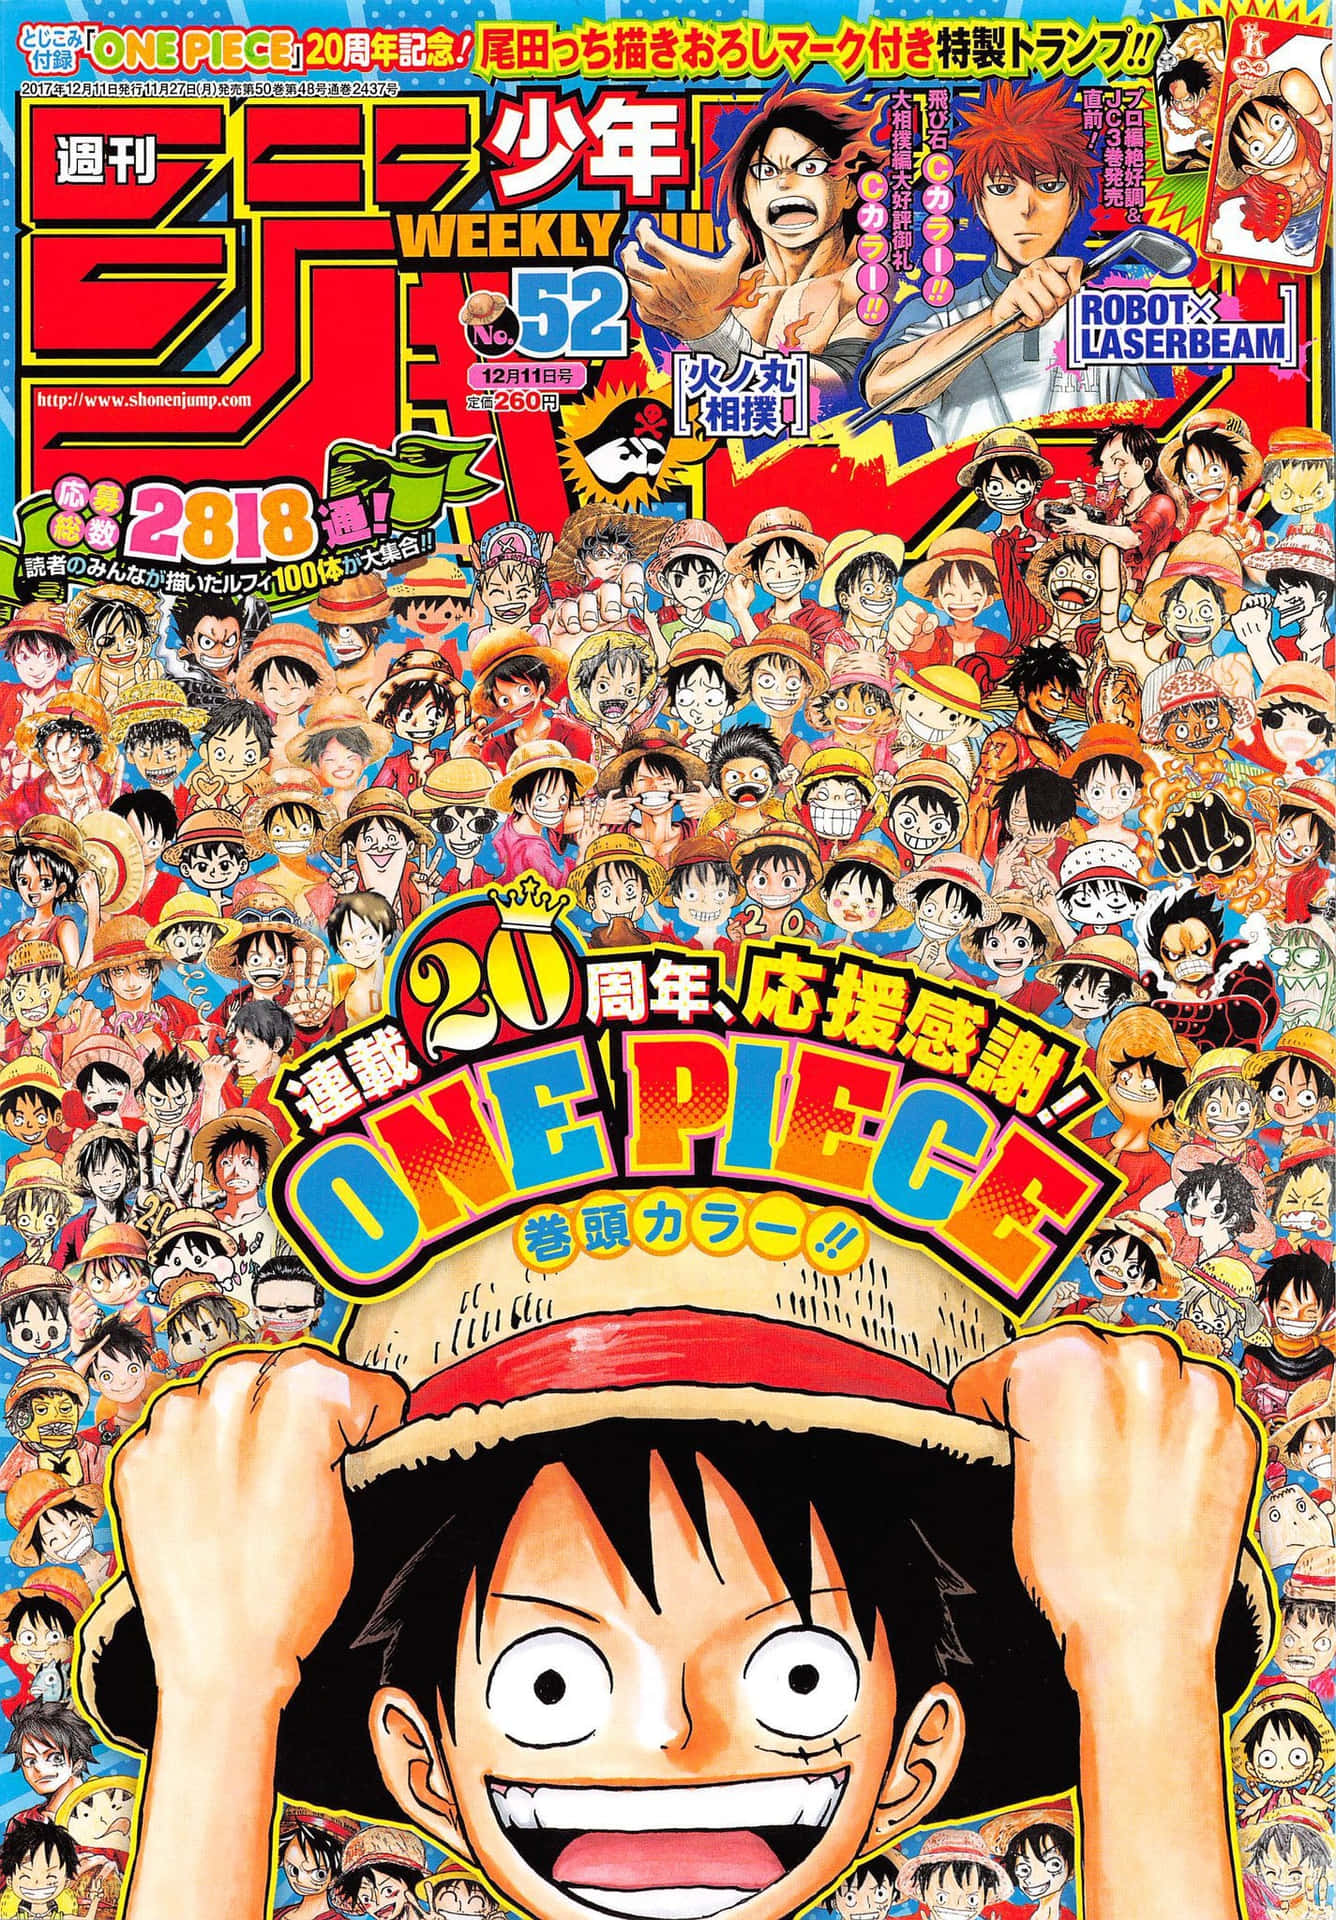 ¡sintonizacada Semana Para Las Últimas Novedades De Los Mangas Y Animes De Shonen Jump! Fondo de pantalla